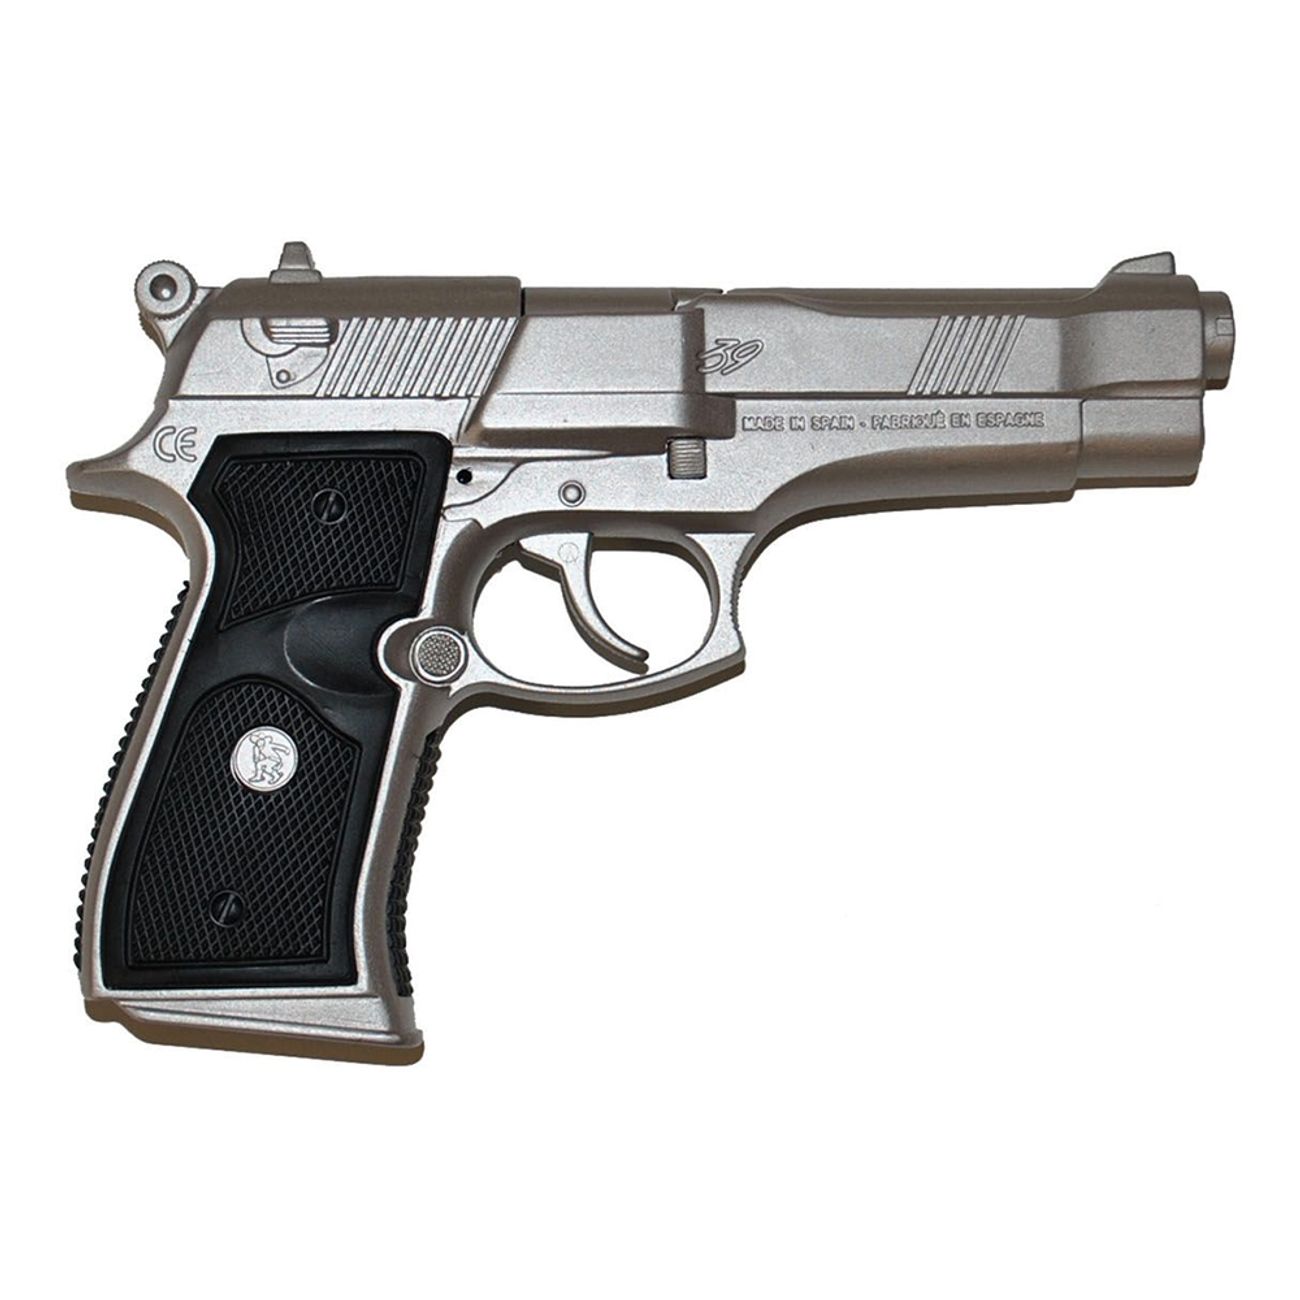 leksakspistol-revolver-i-metall-1